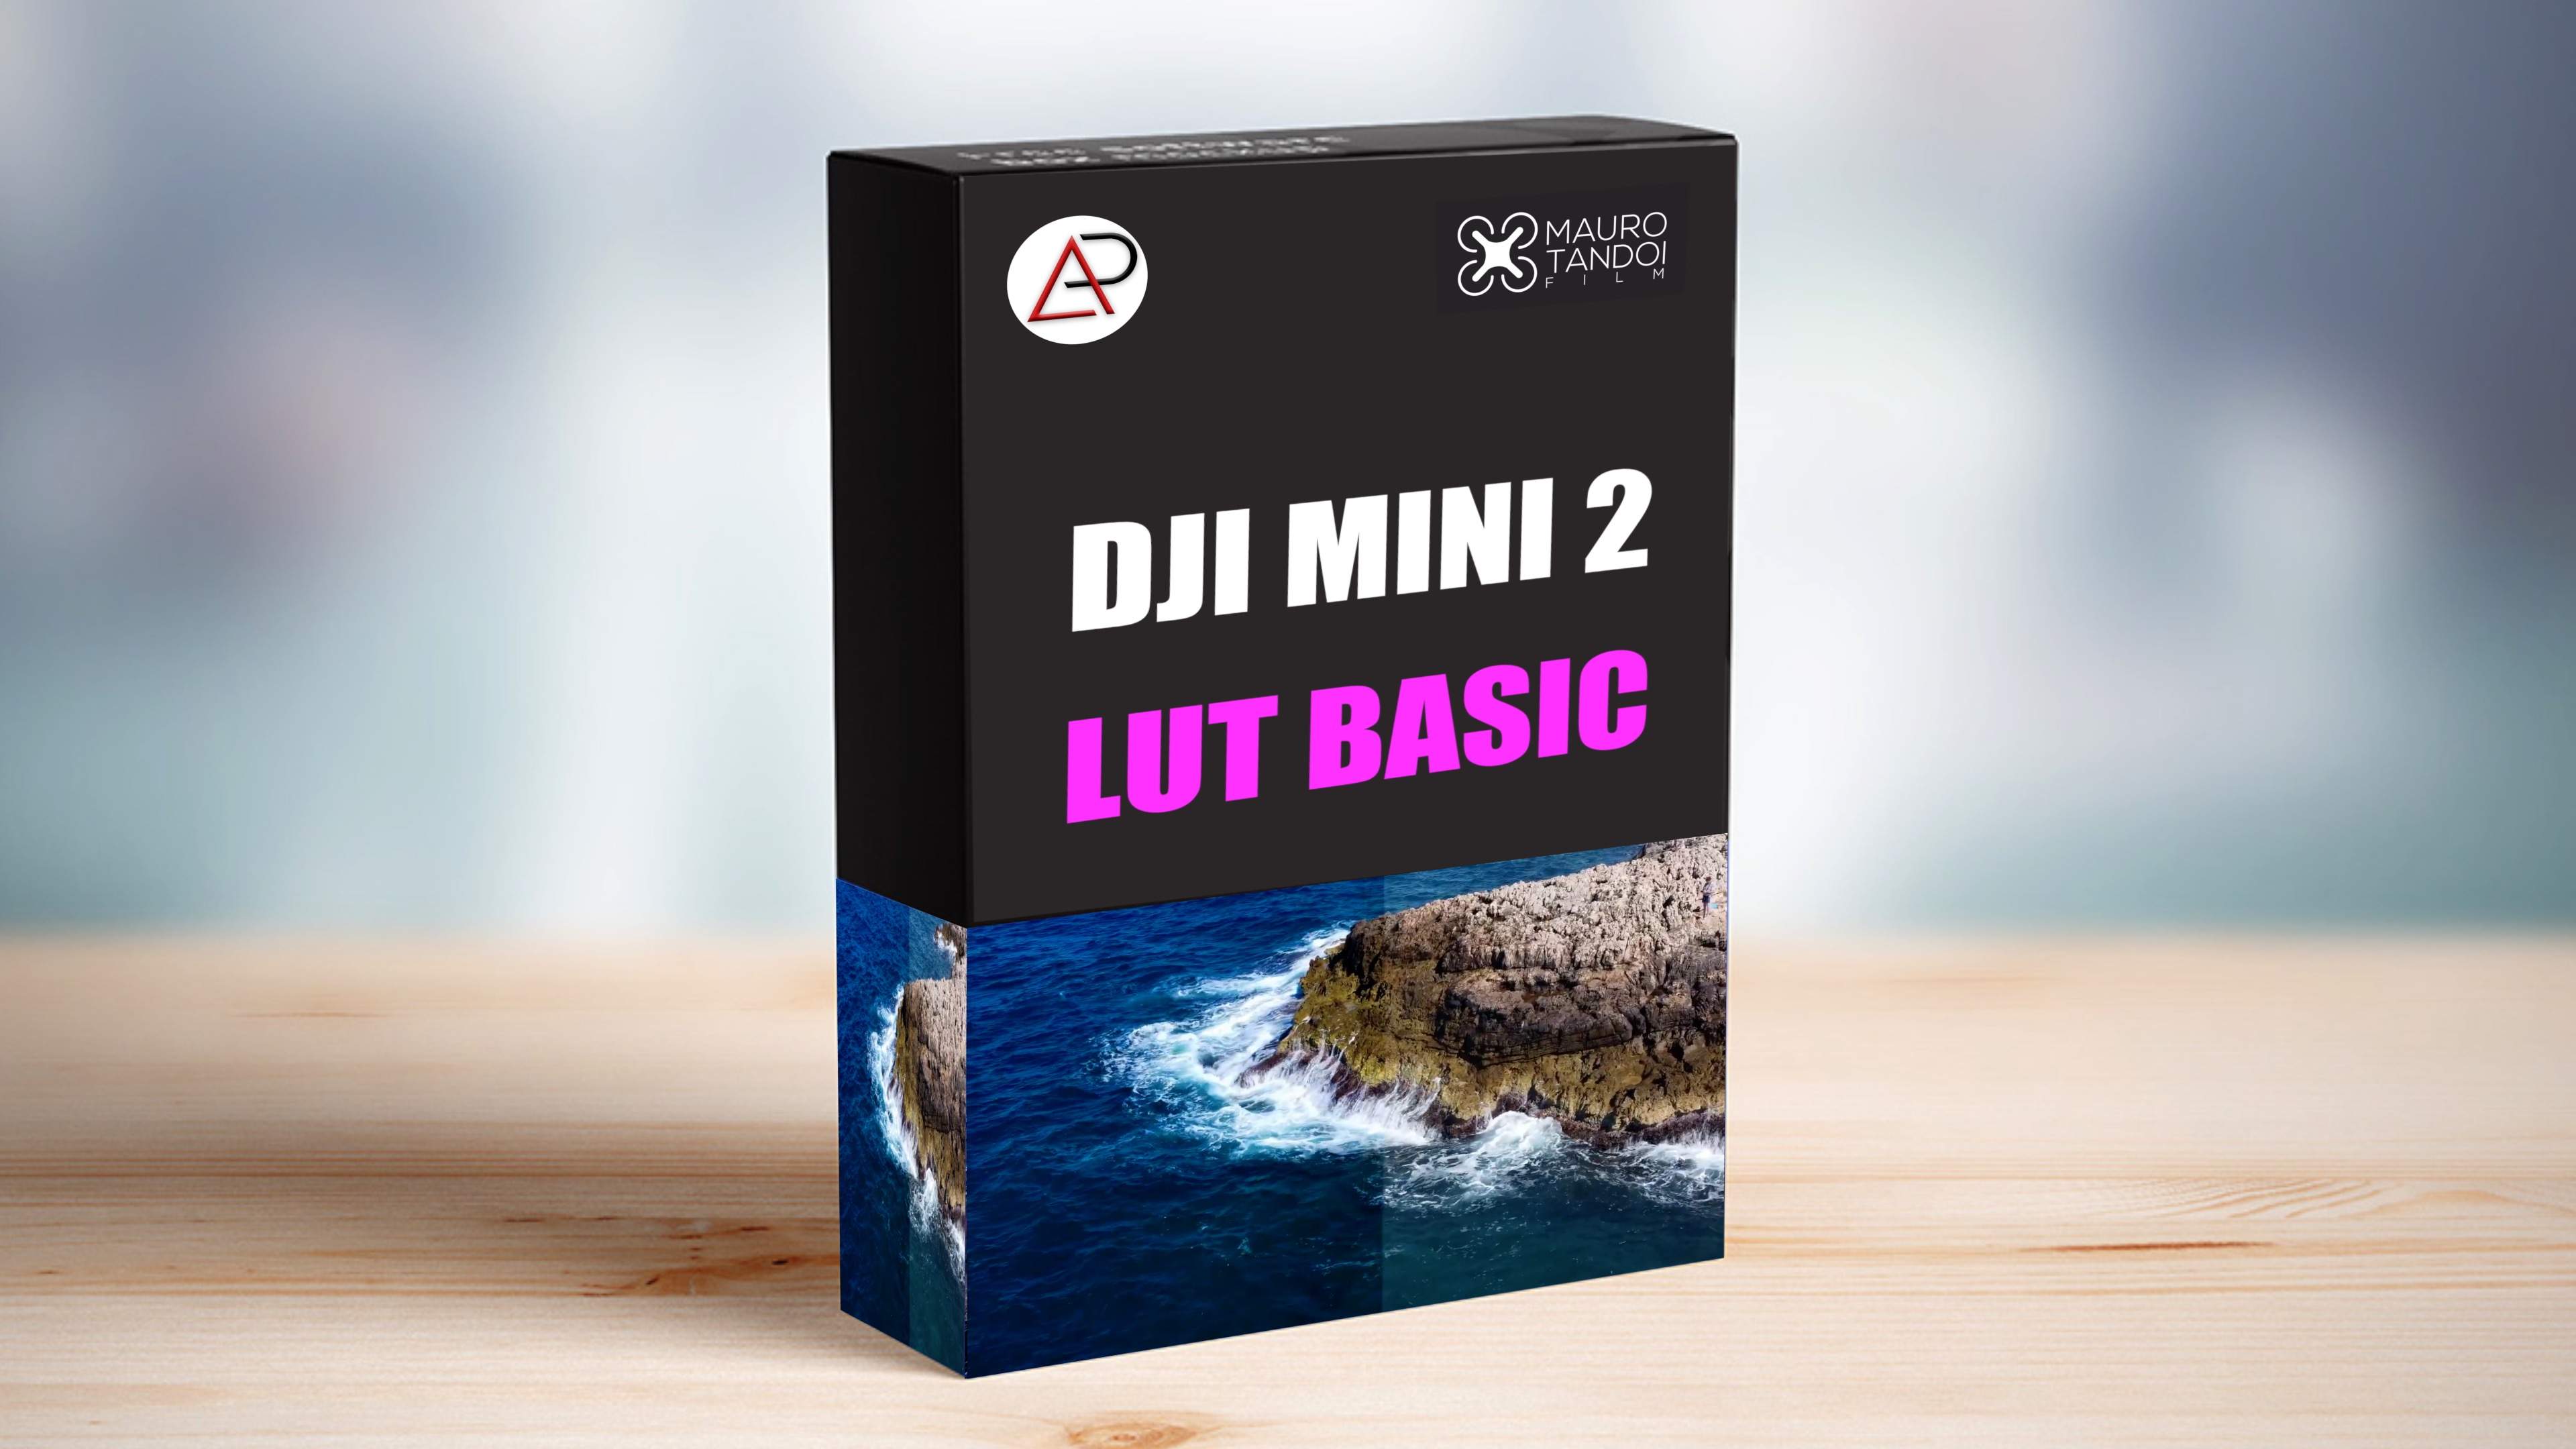 DJI MINI 2 LUT BASIC